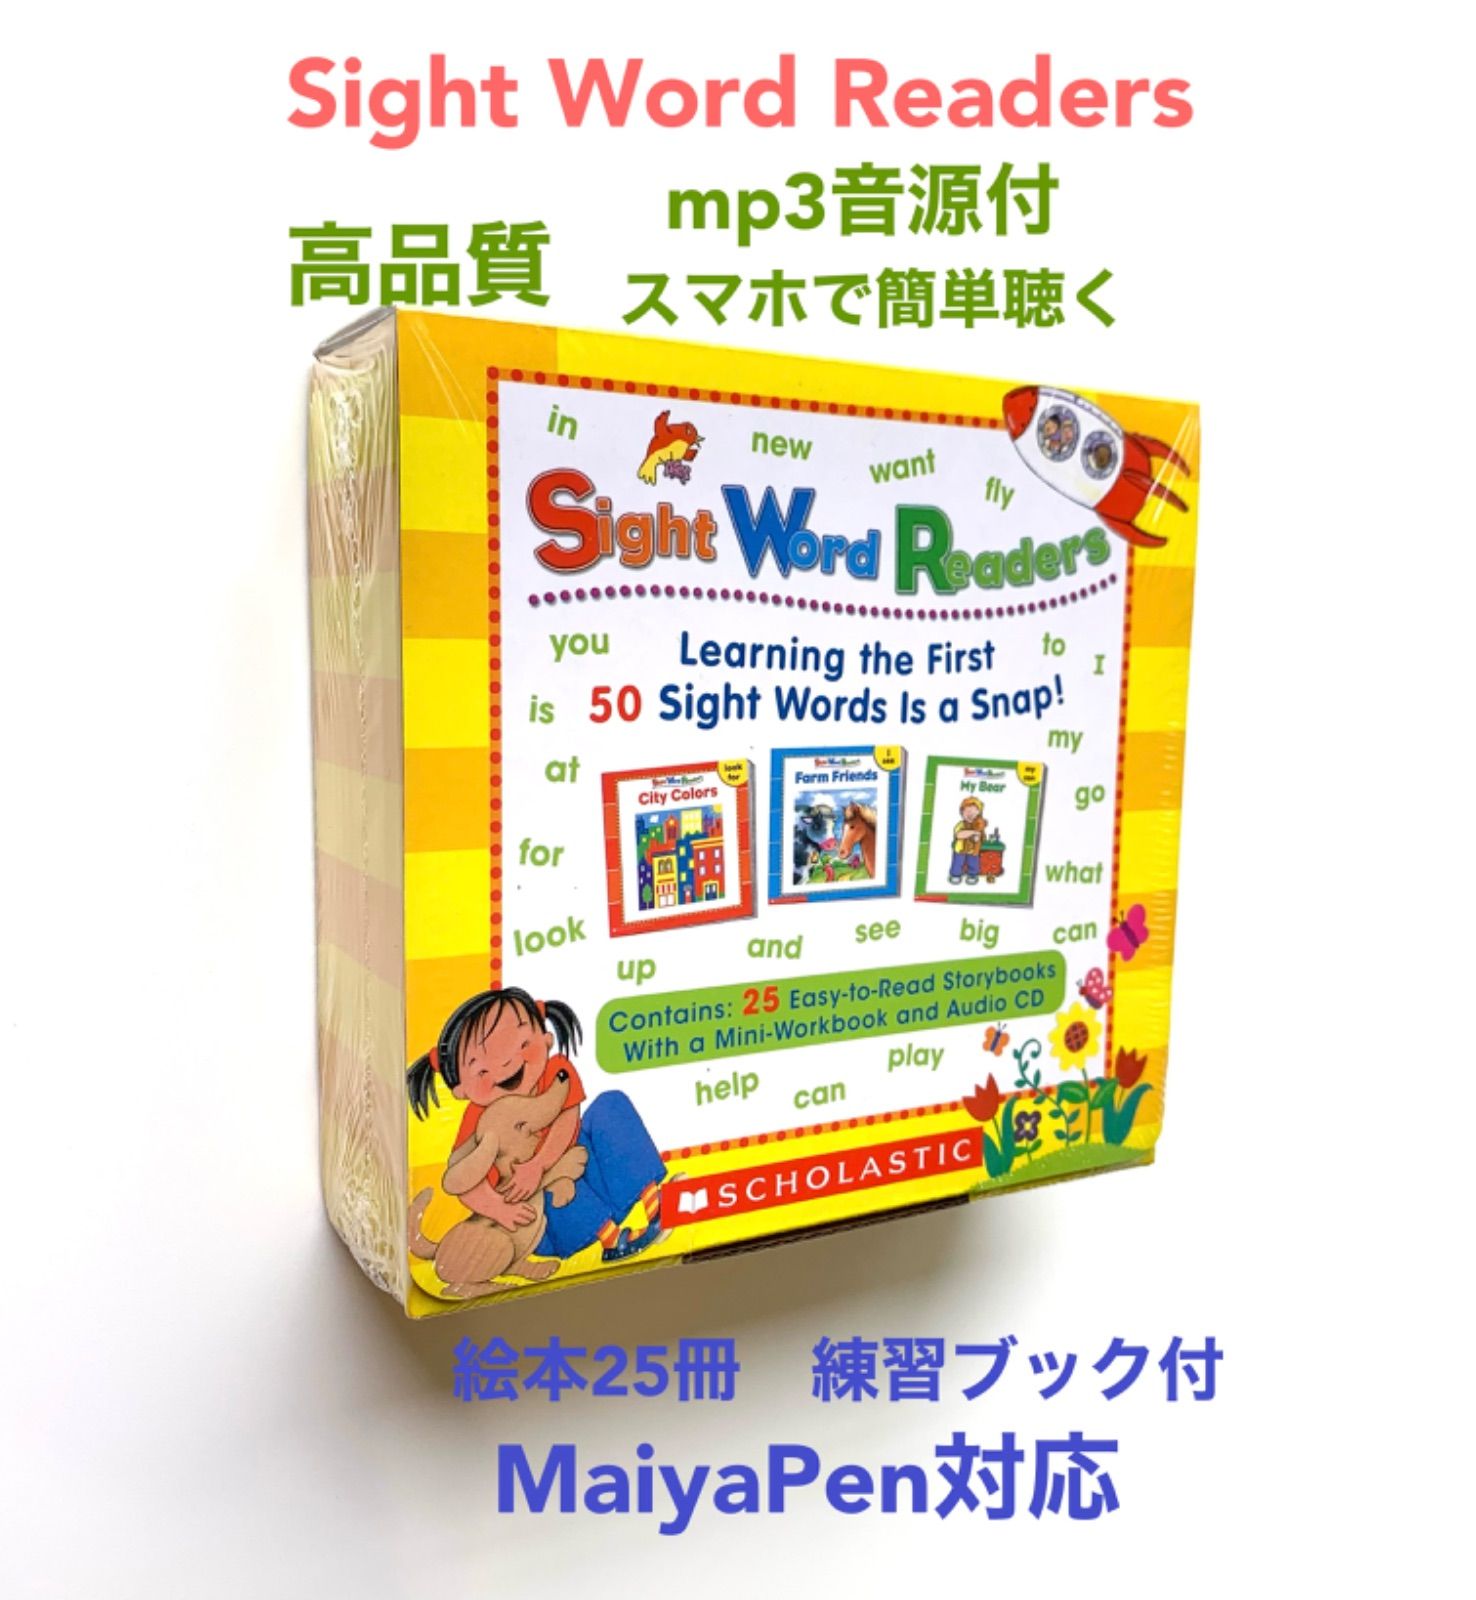 first little readers sight word readersScholasticSize